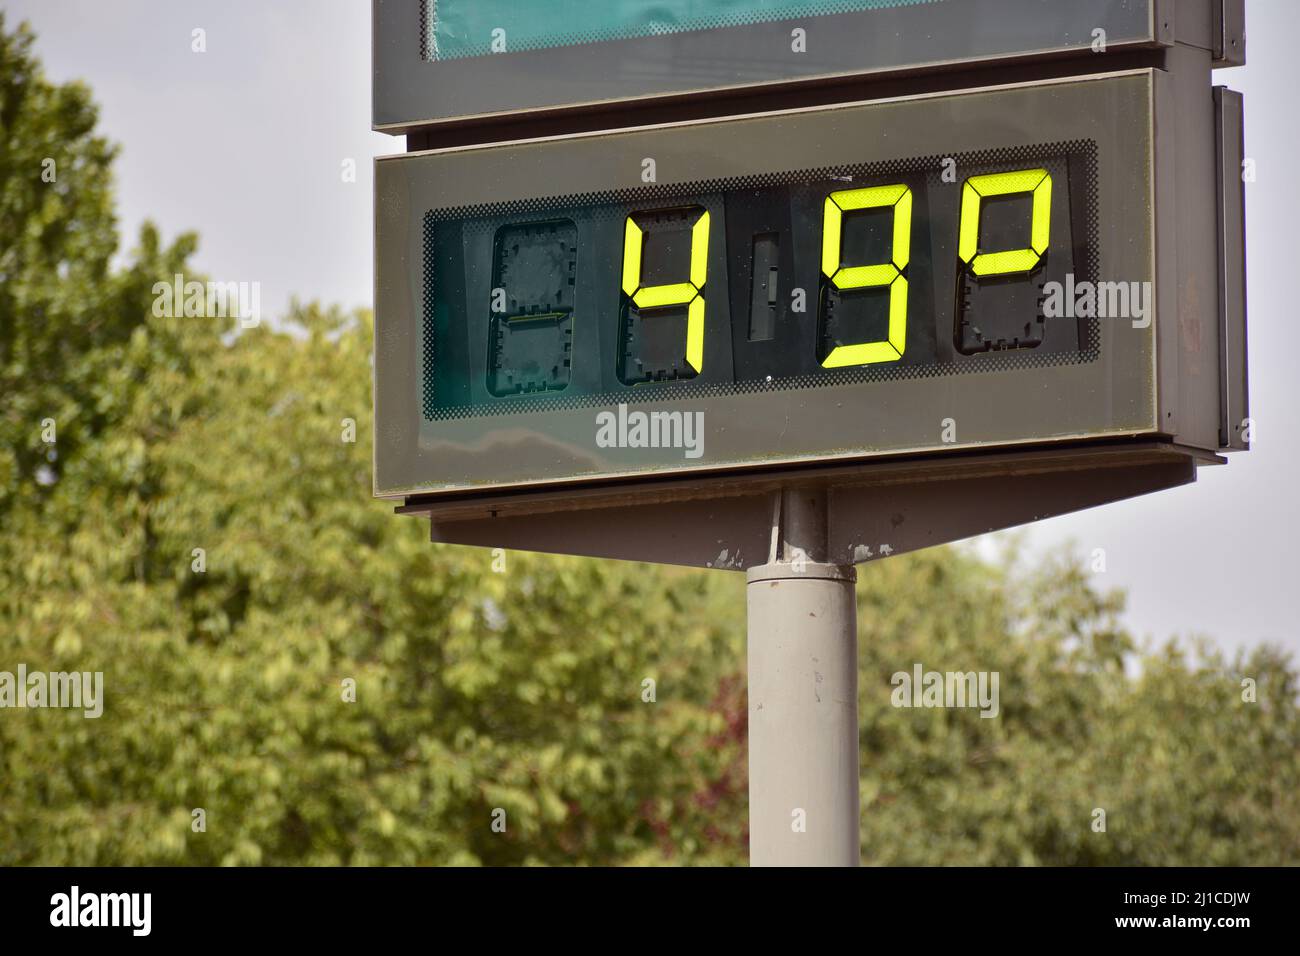 Termómetro callejero en una calle marcando 49 gradi celsius Foto Stock